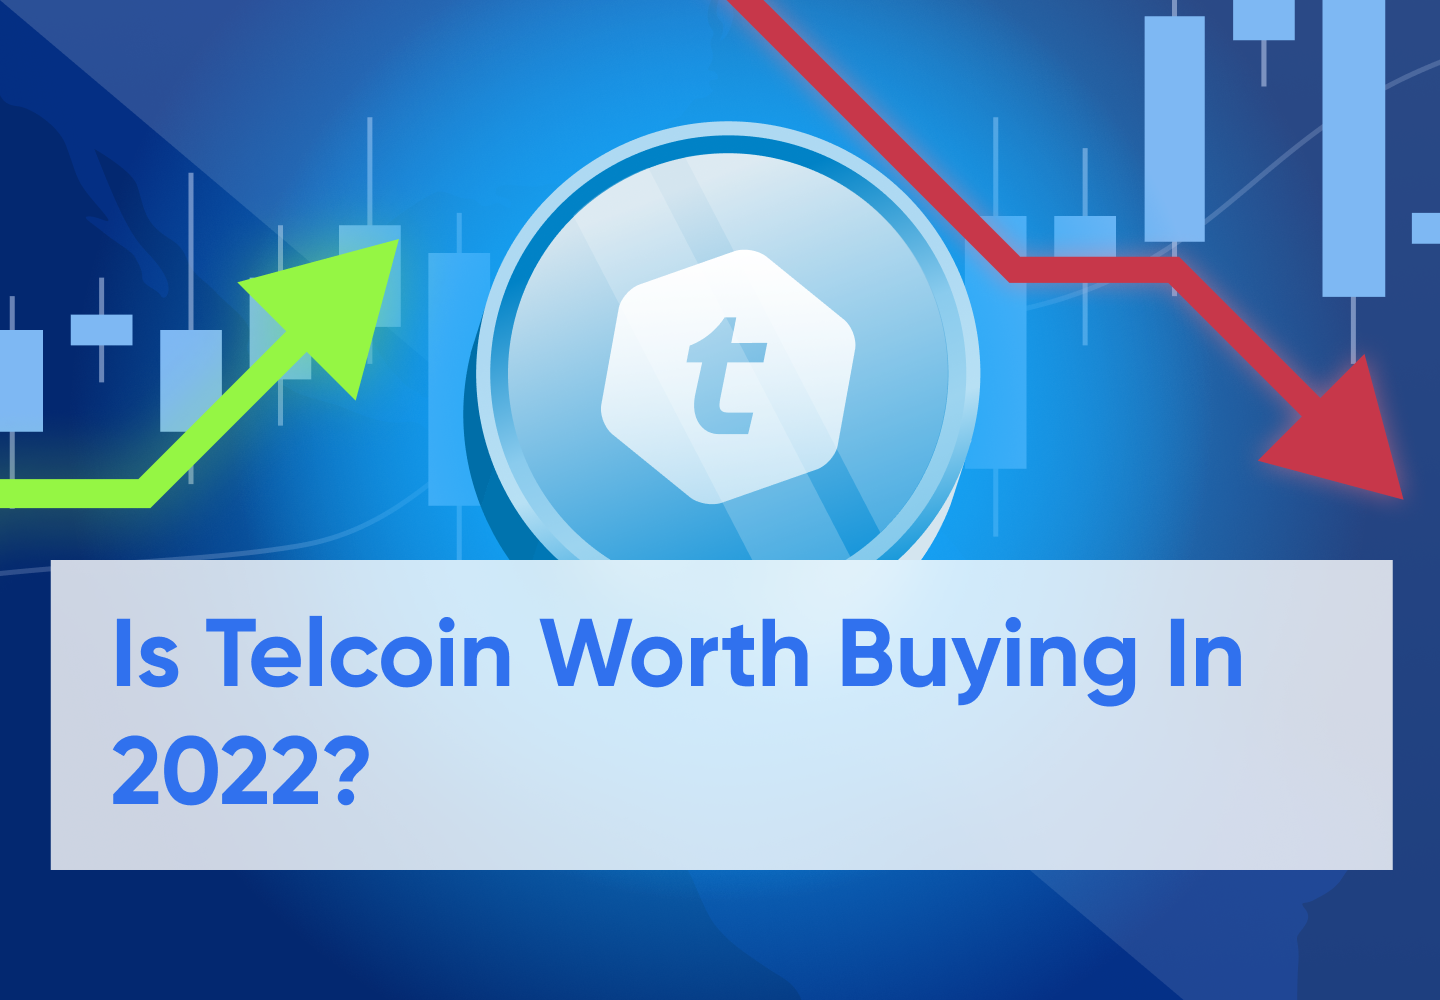 Telcoin Price Prediction 2022 - 2030